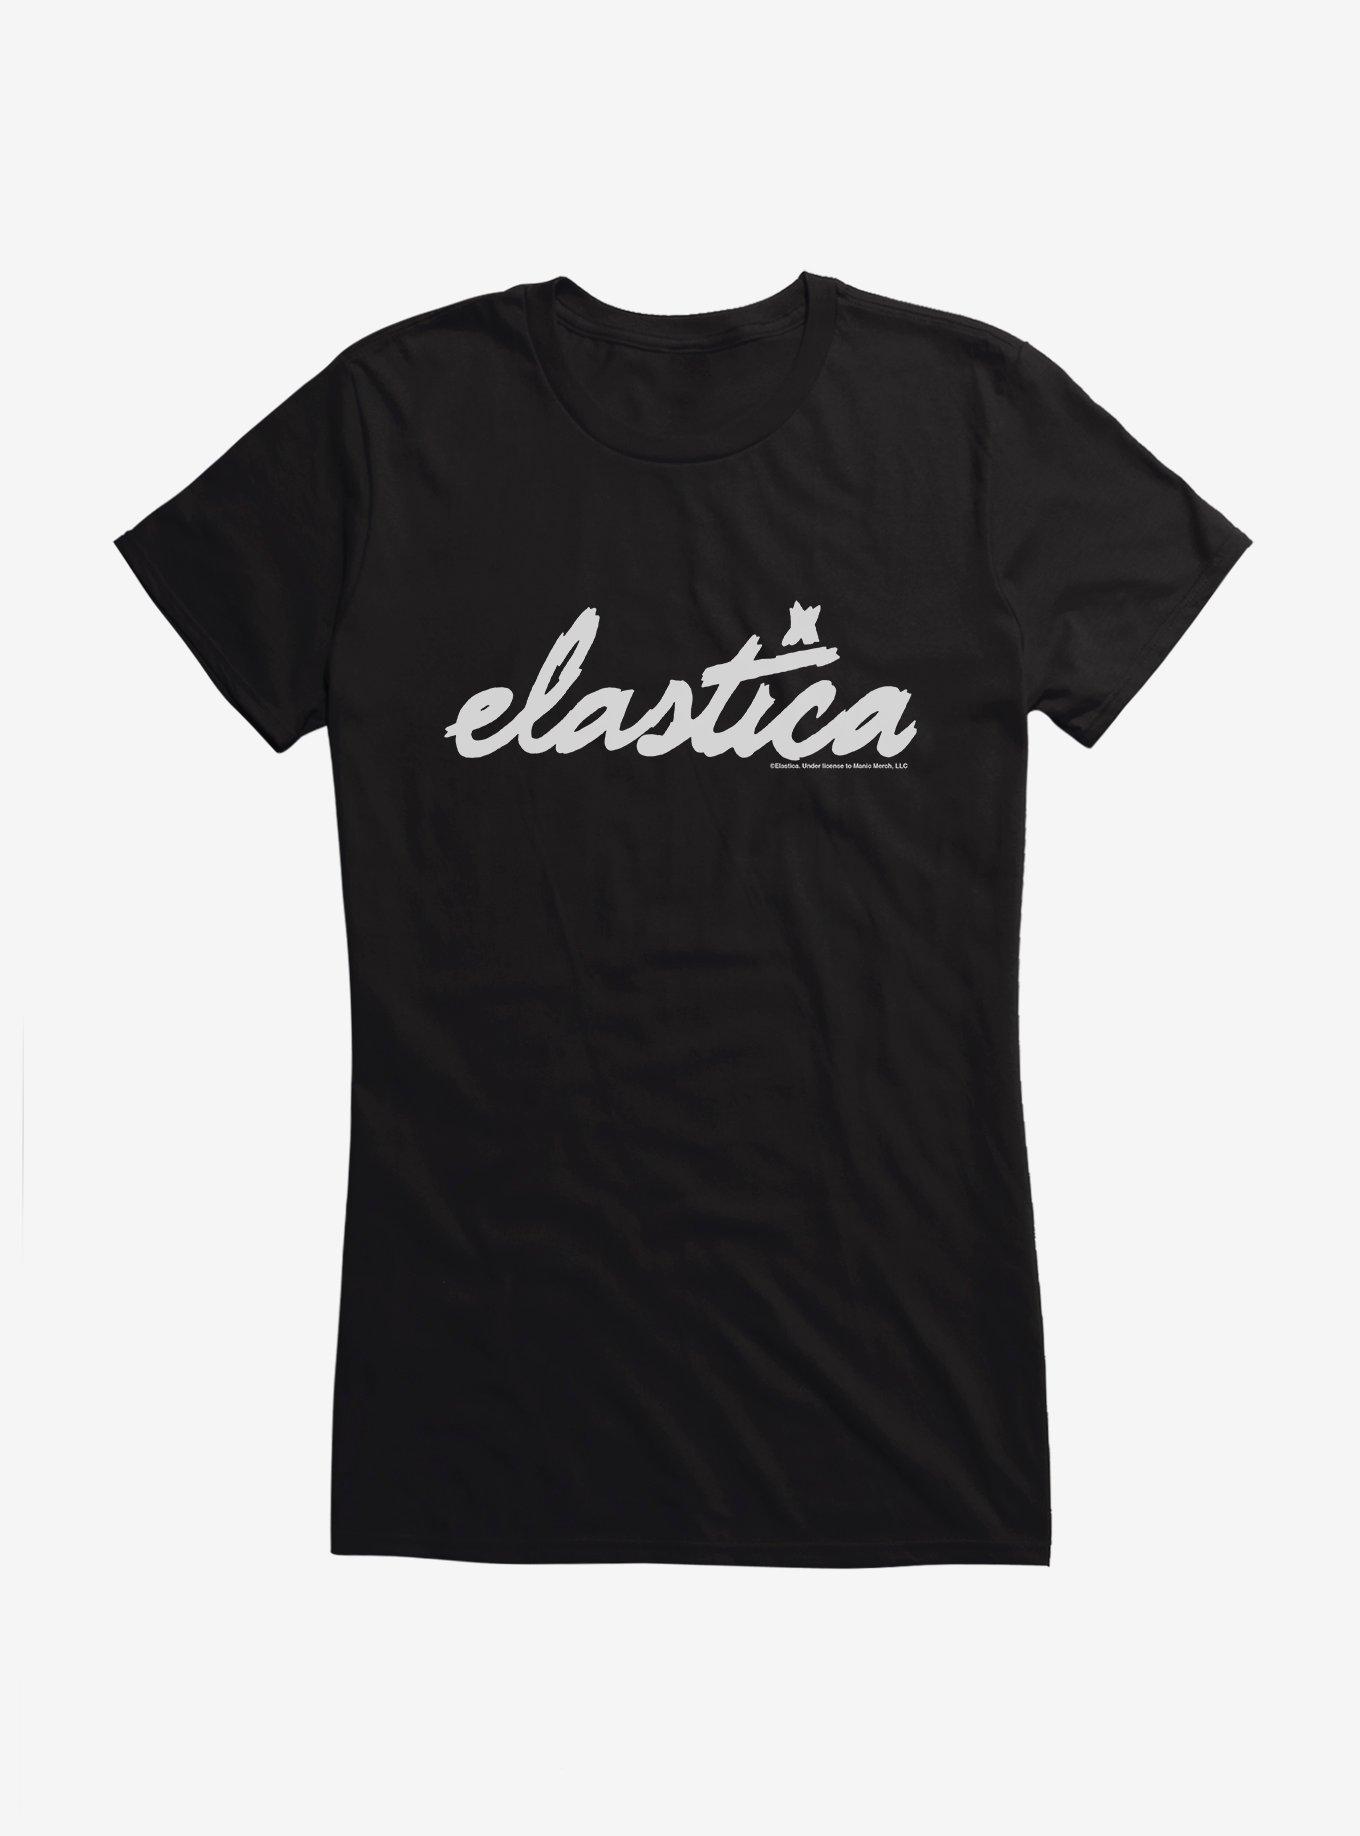 Elastica Logo Girls T-Shirt, BLACK, hi-res